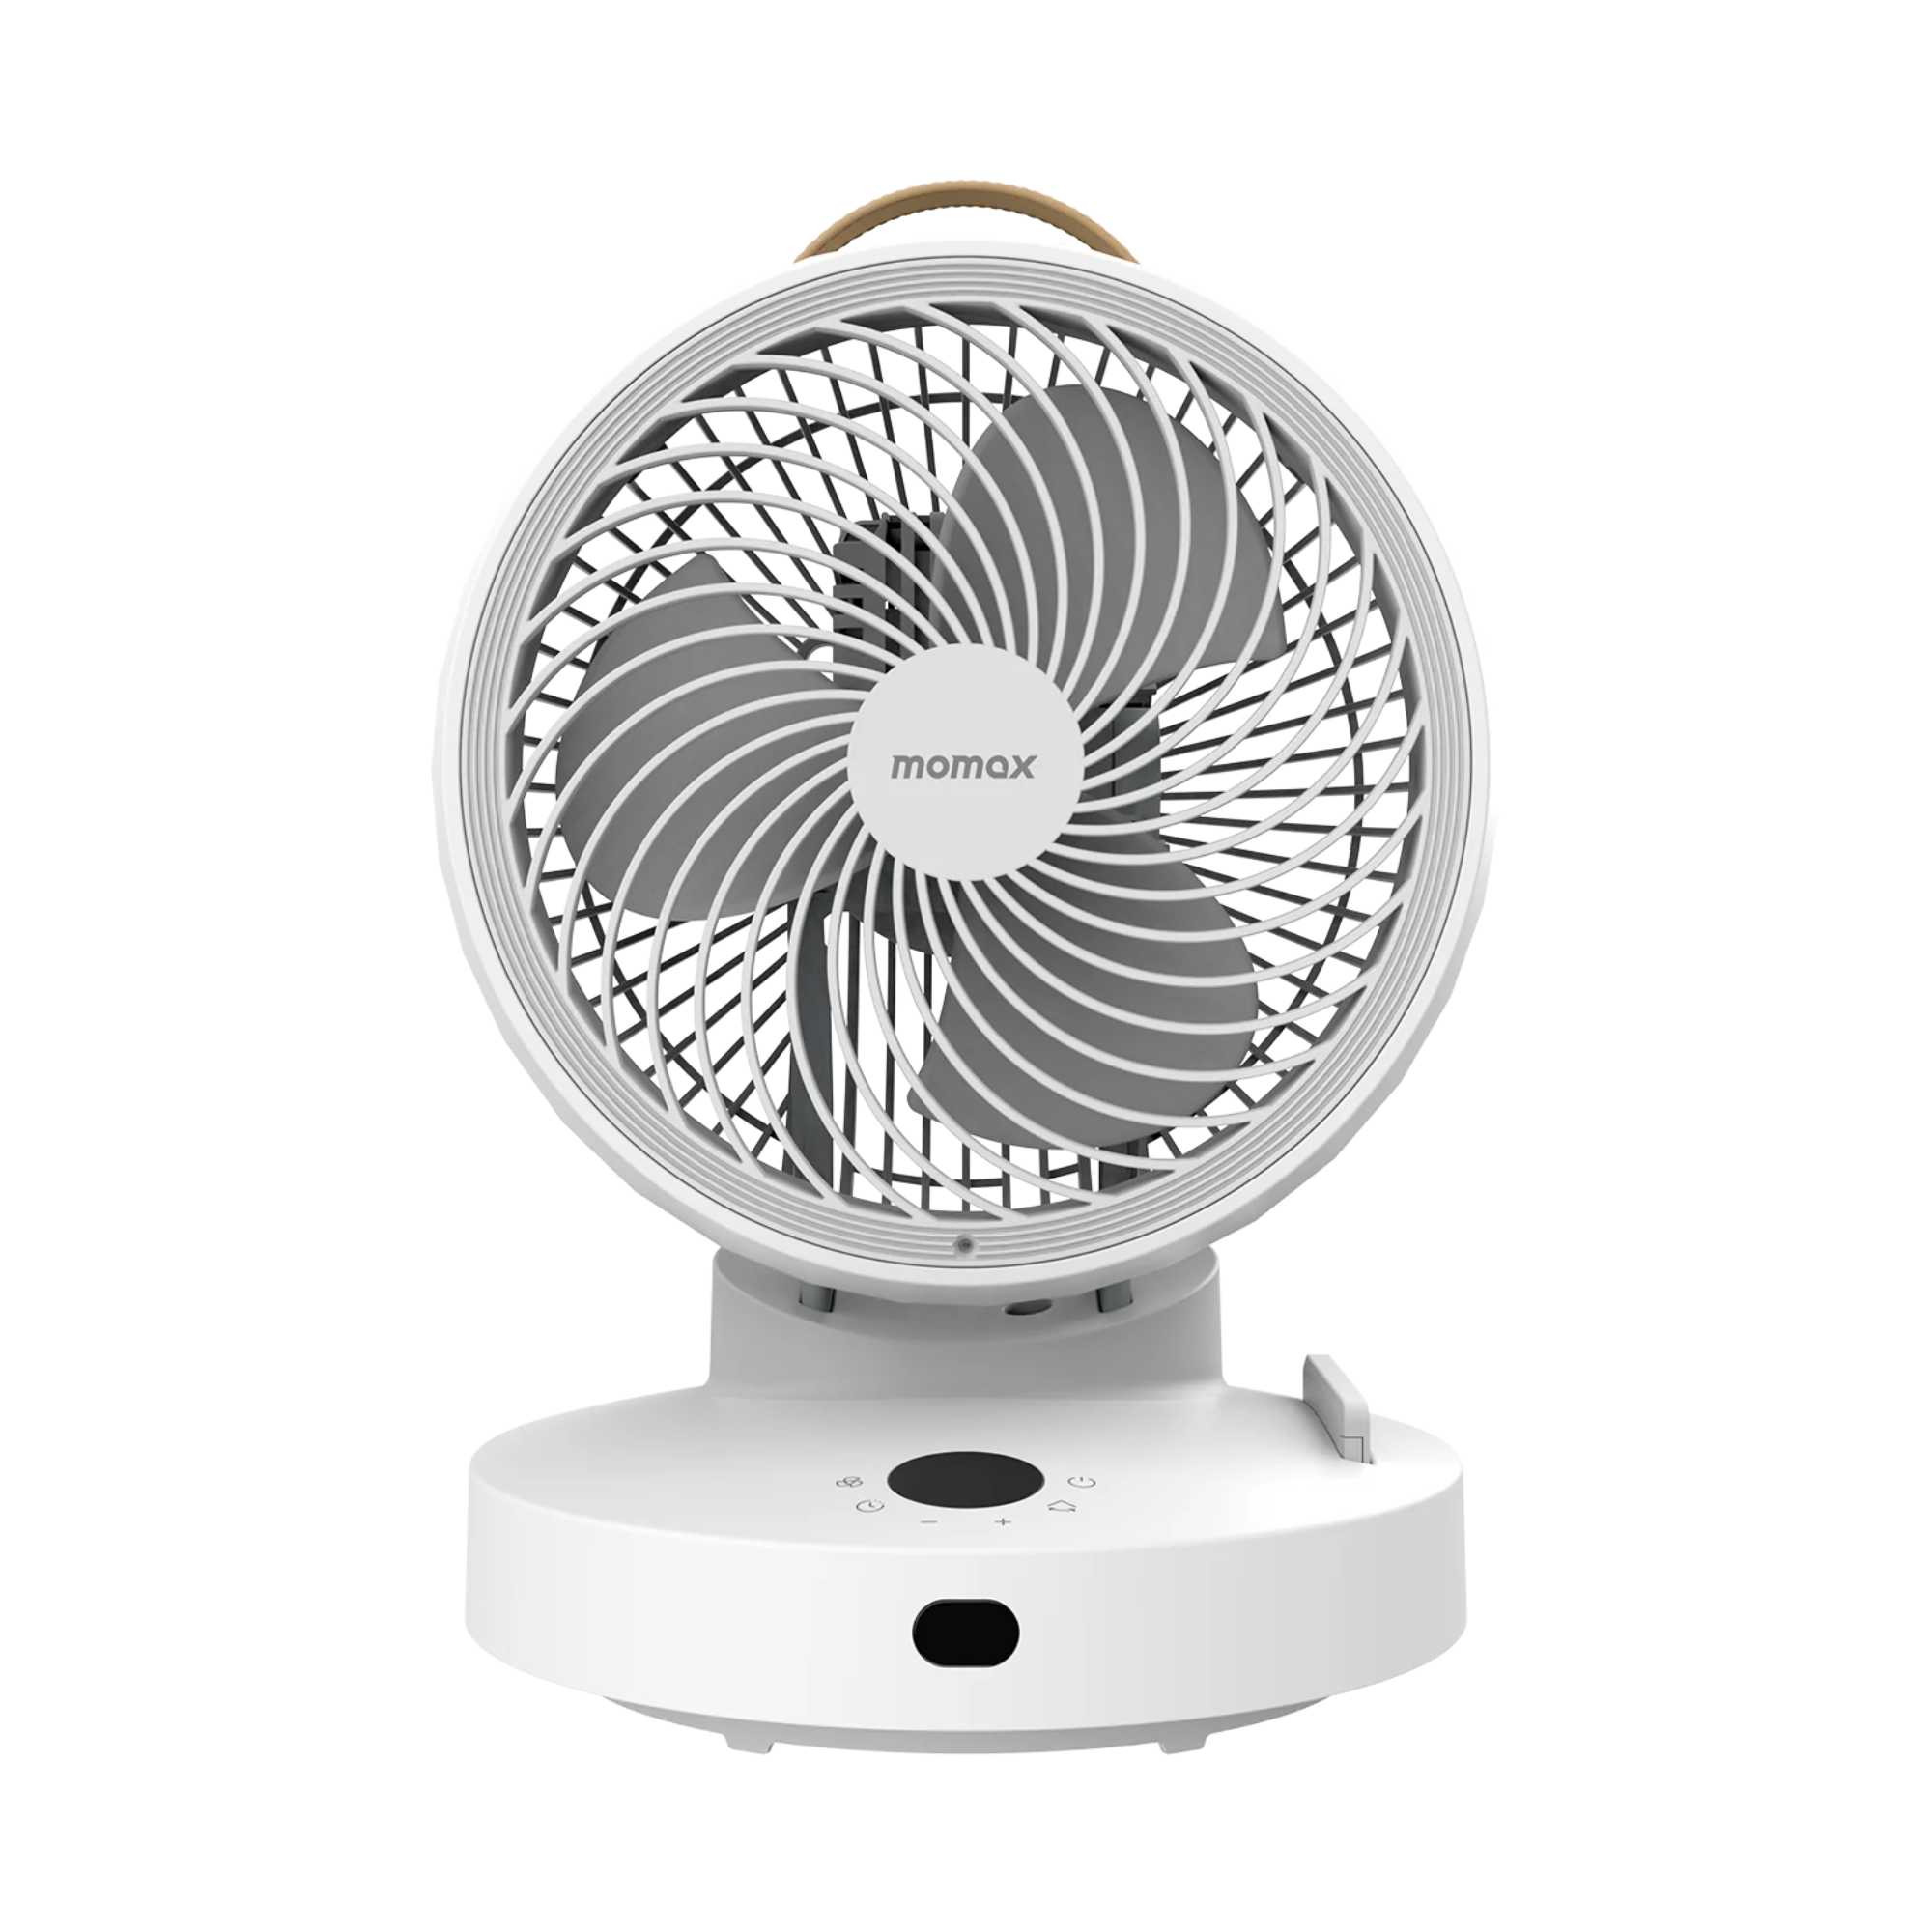 iFan 3D Air Circulation Fan